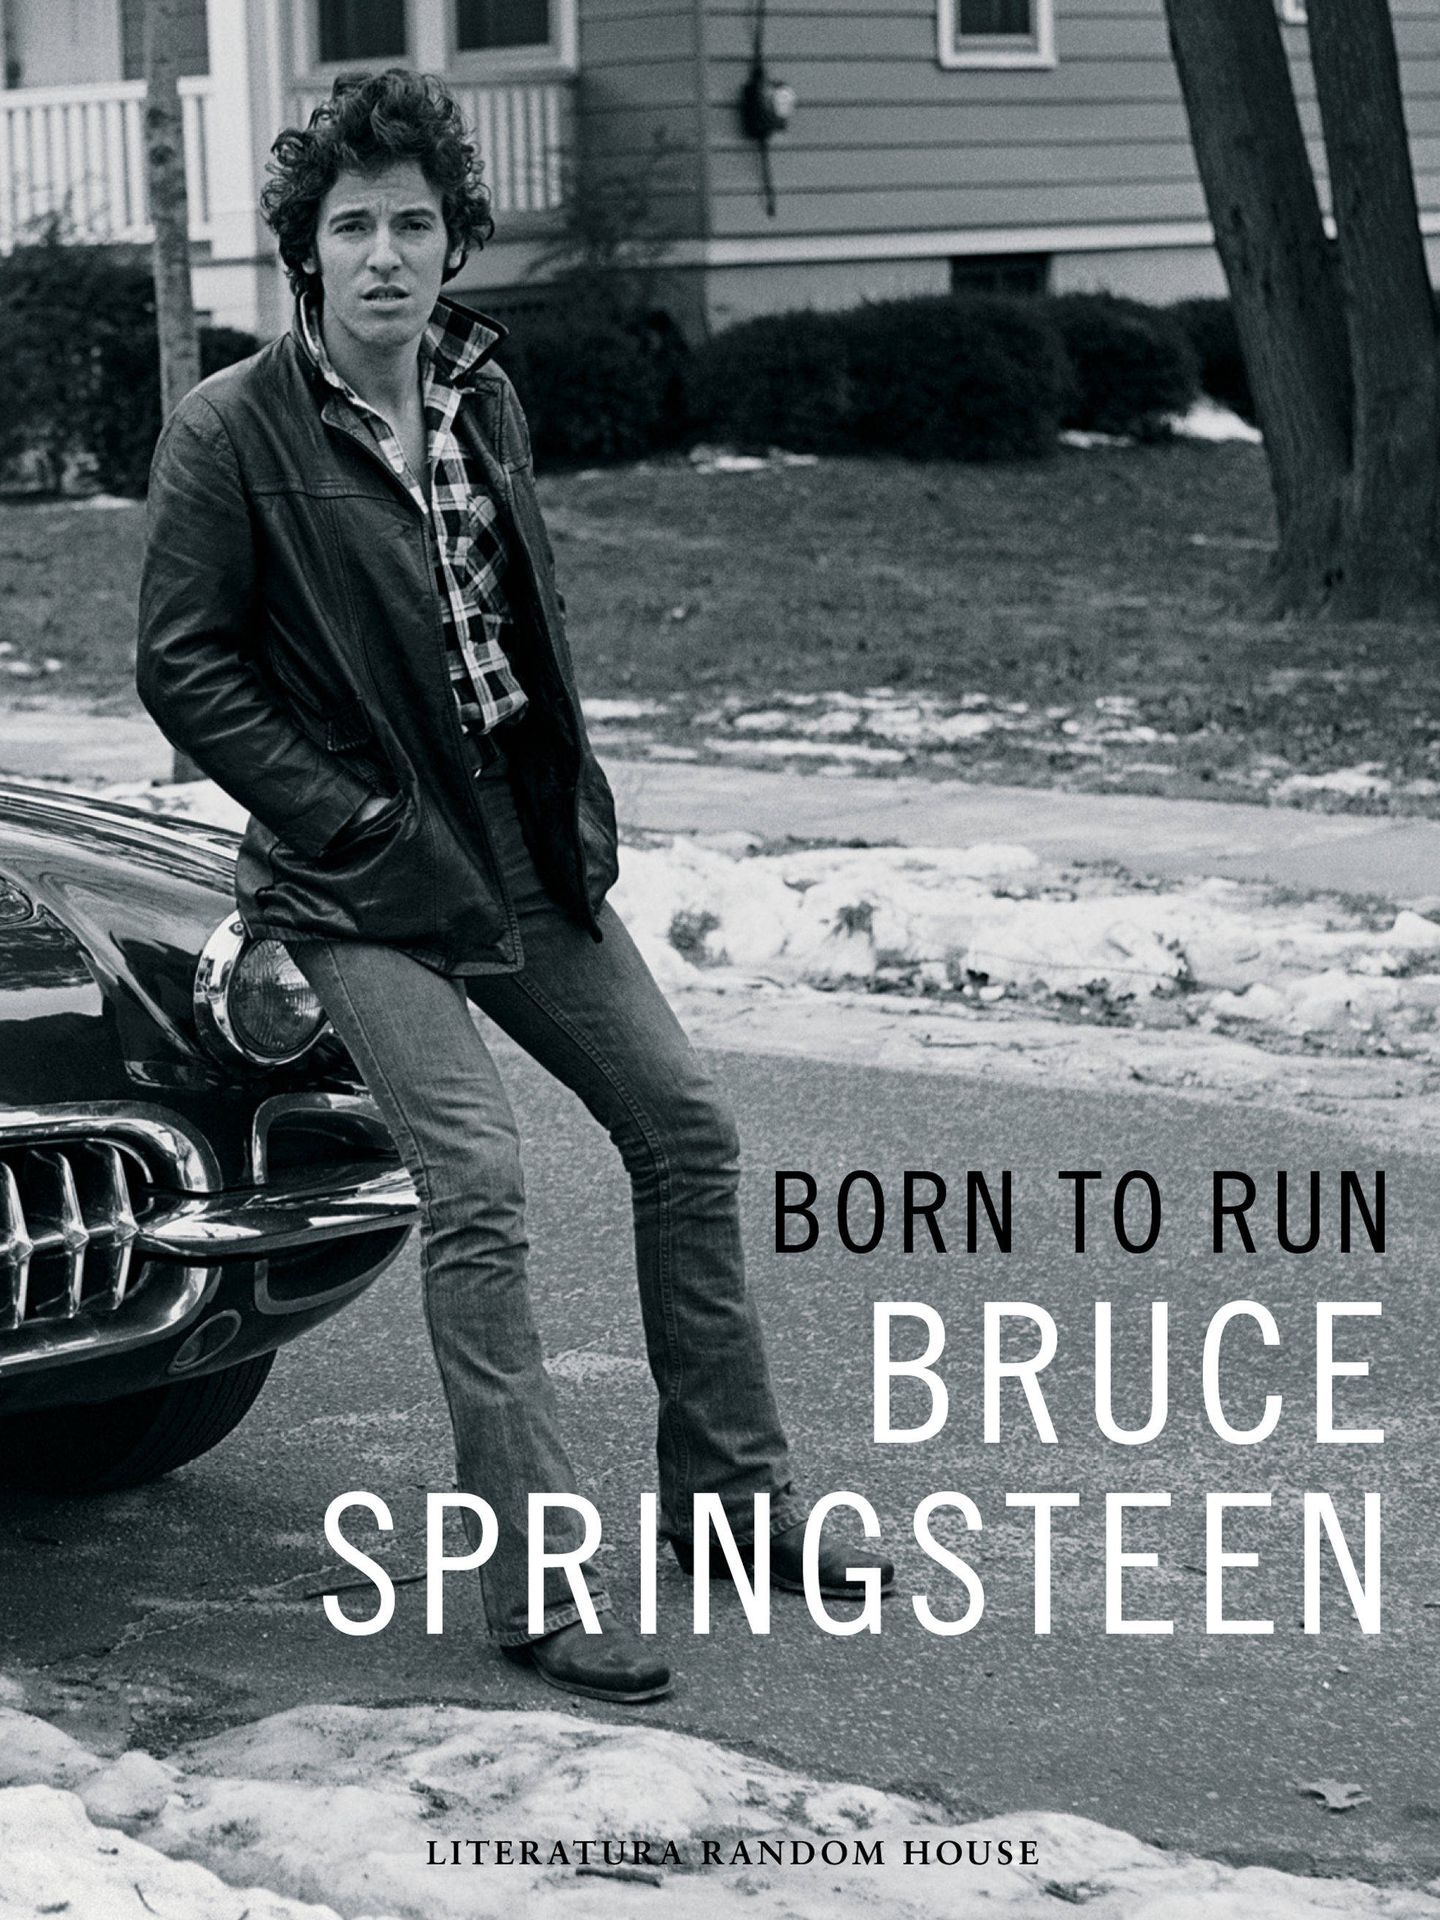 Portada de 'Born to run', de Bruce Springsteen.